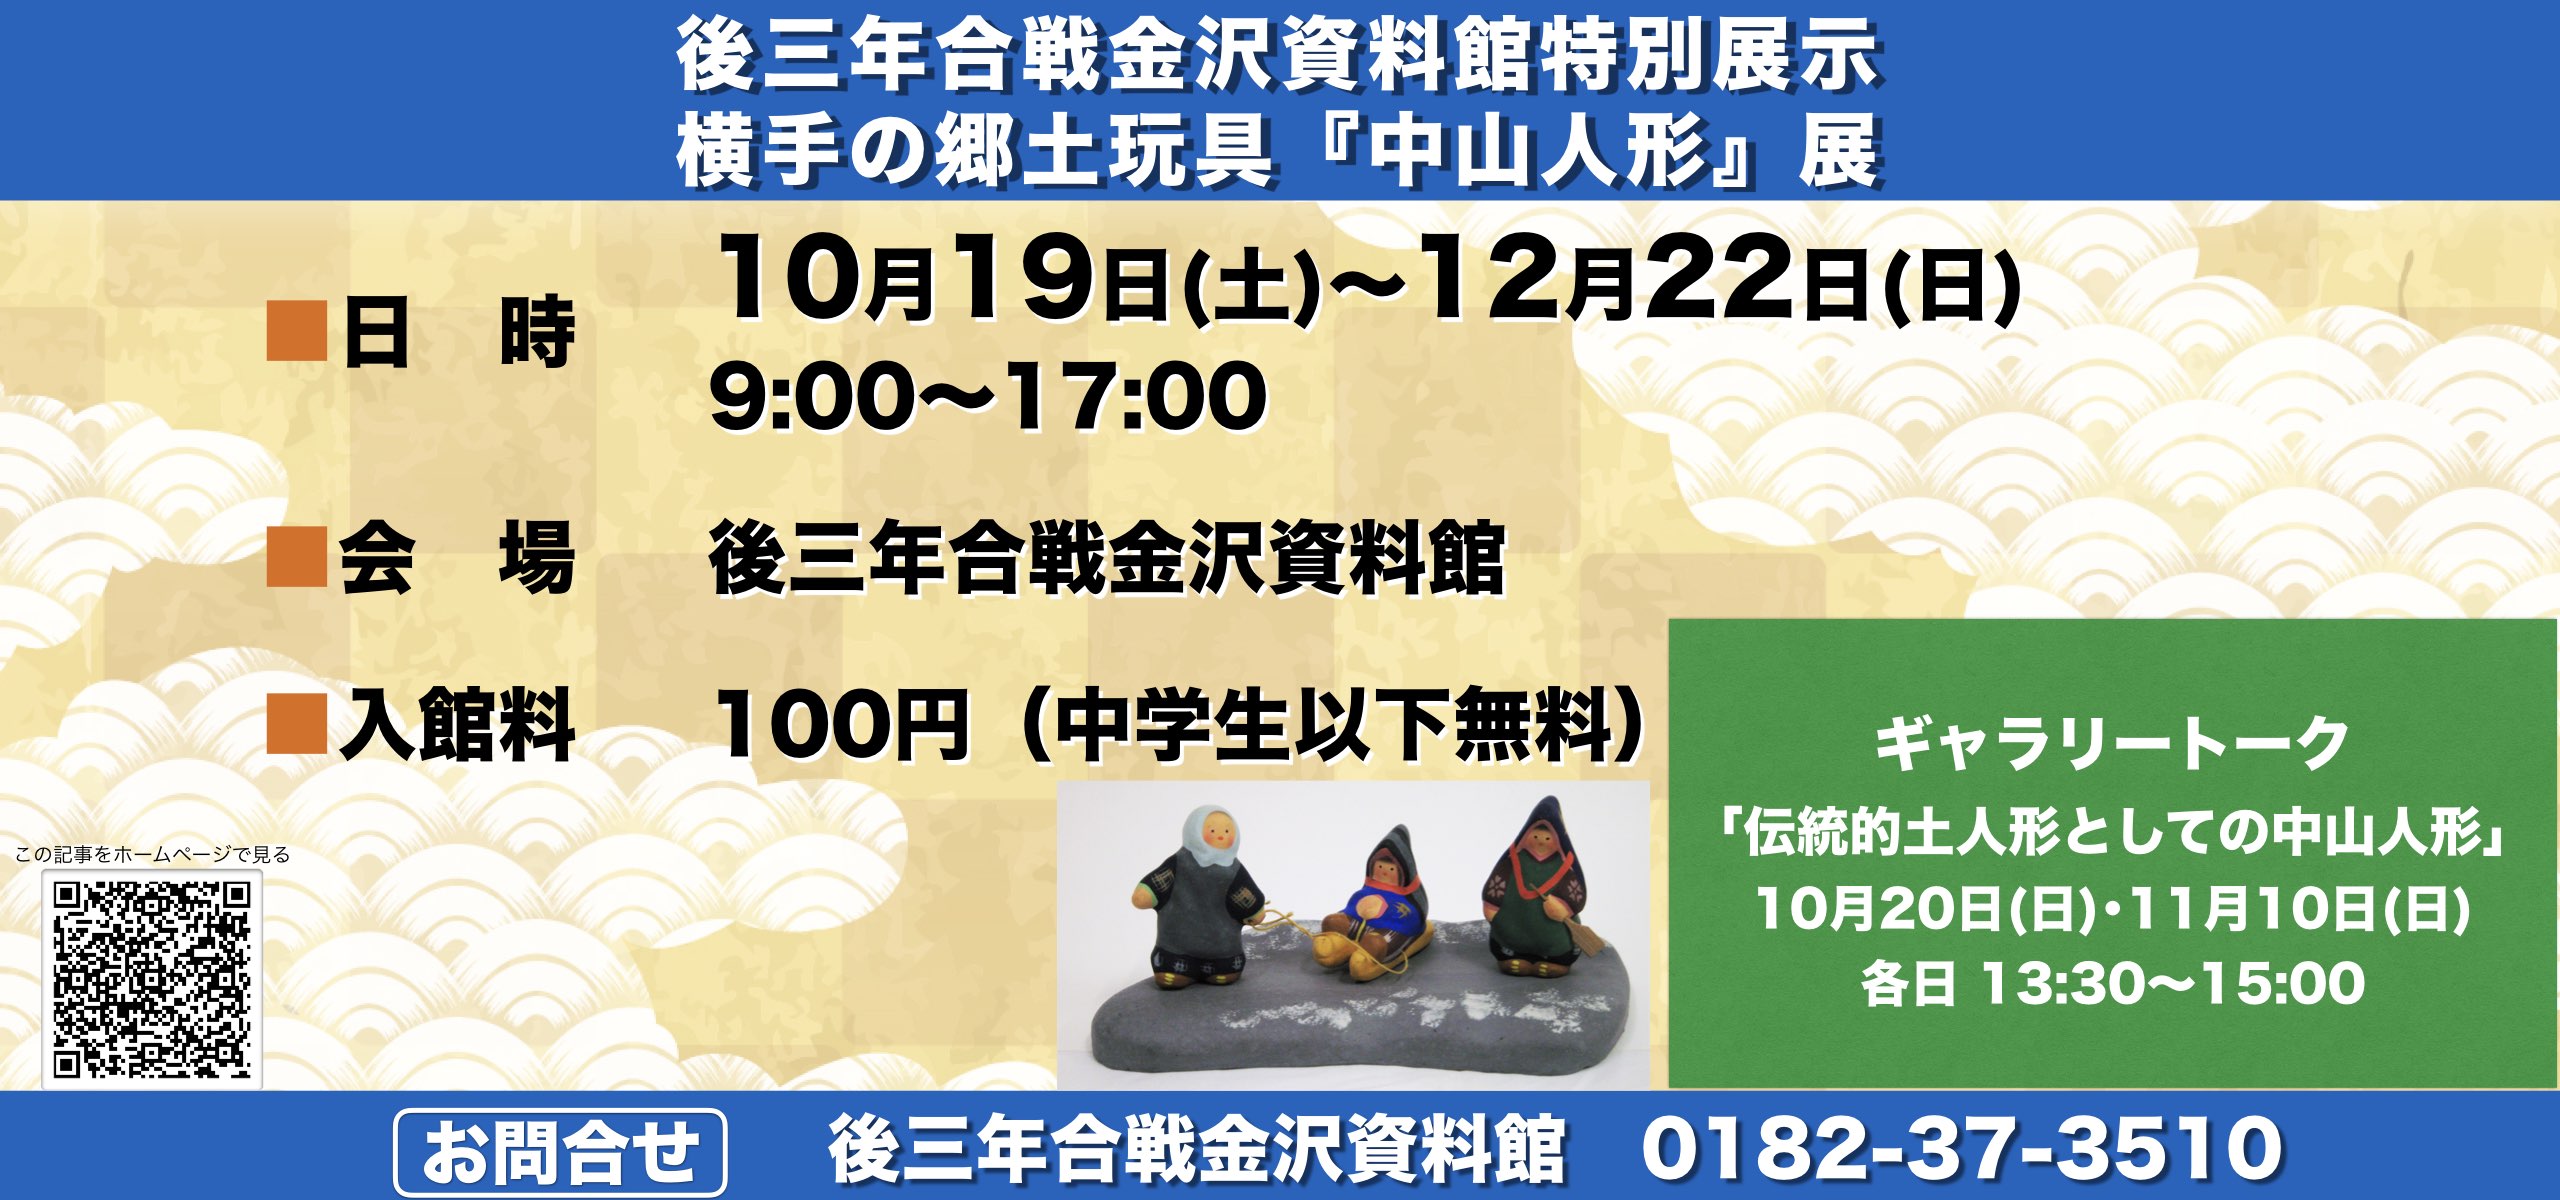 後三年合戦金沢資料館特別展示 横手の郷土玩具『中山人形』展